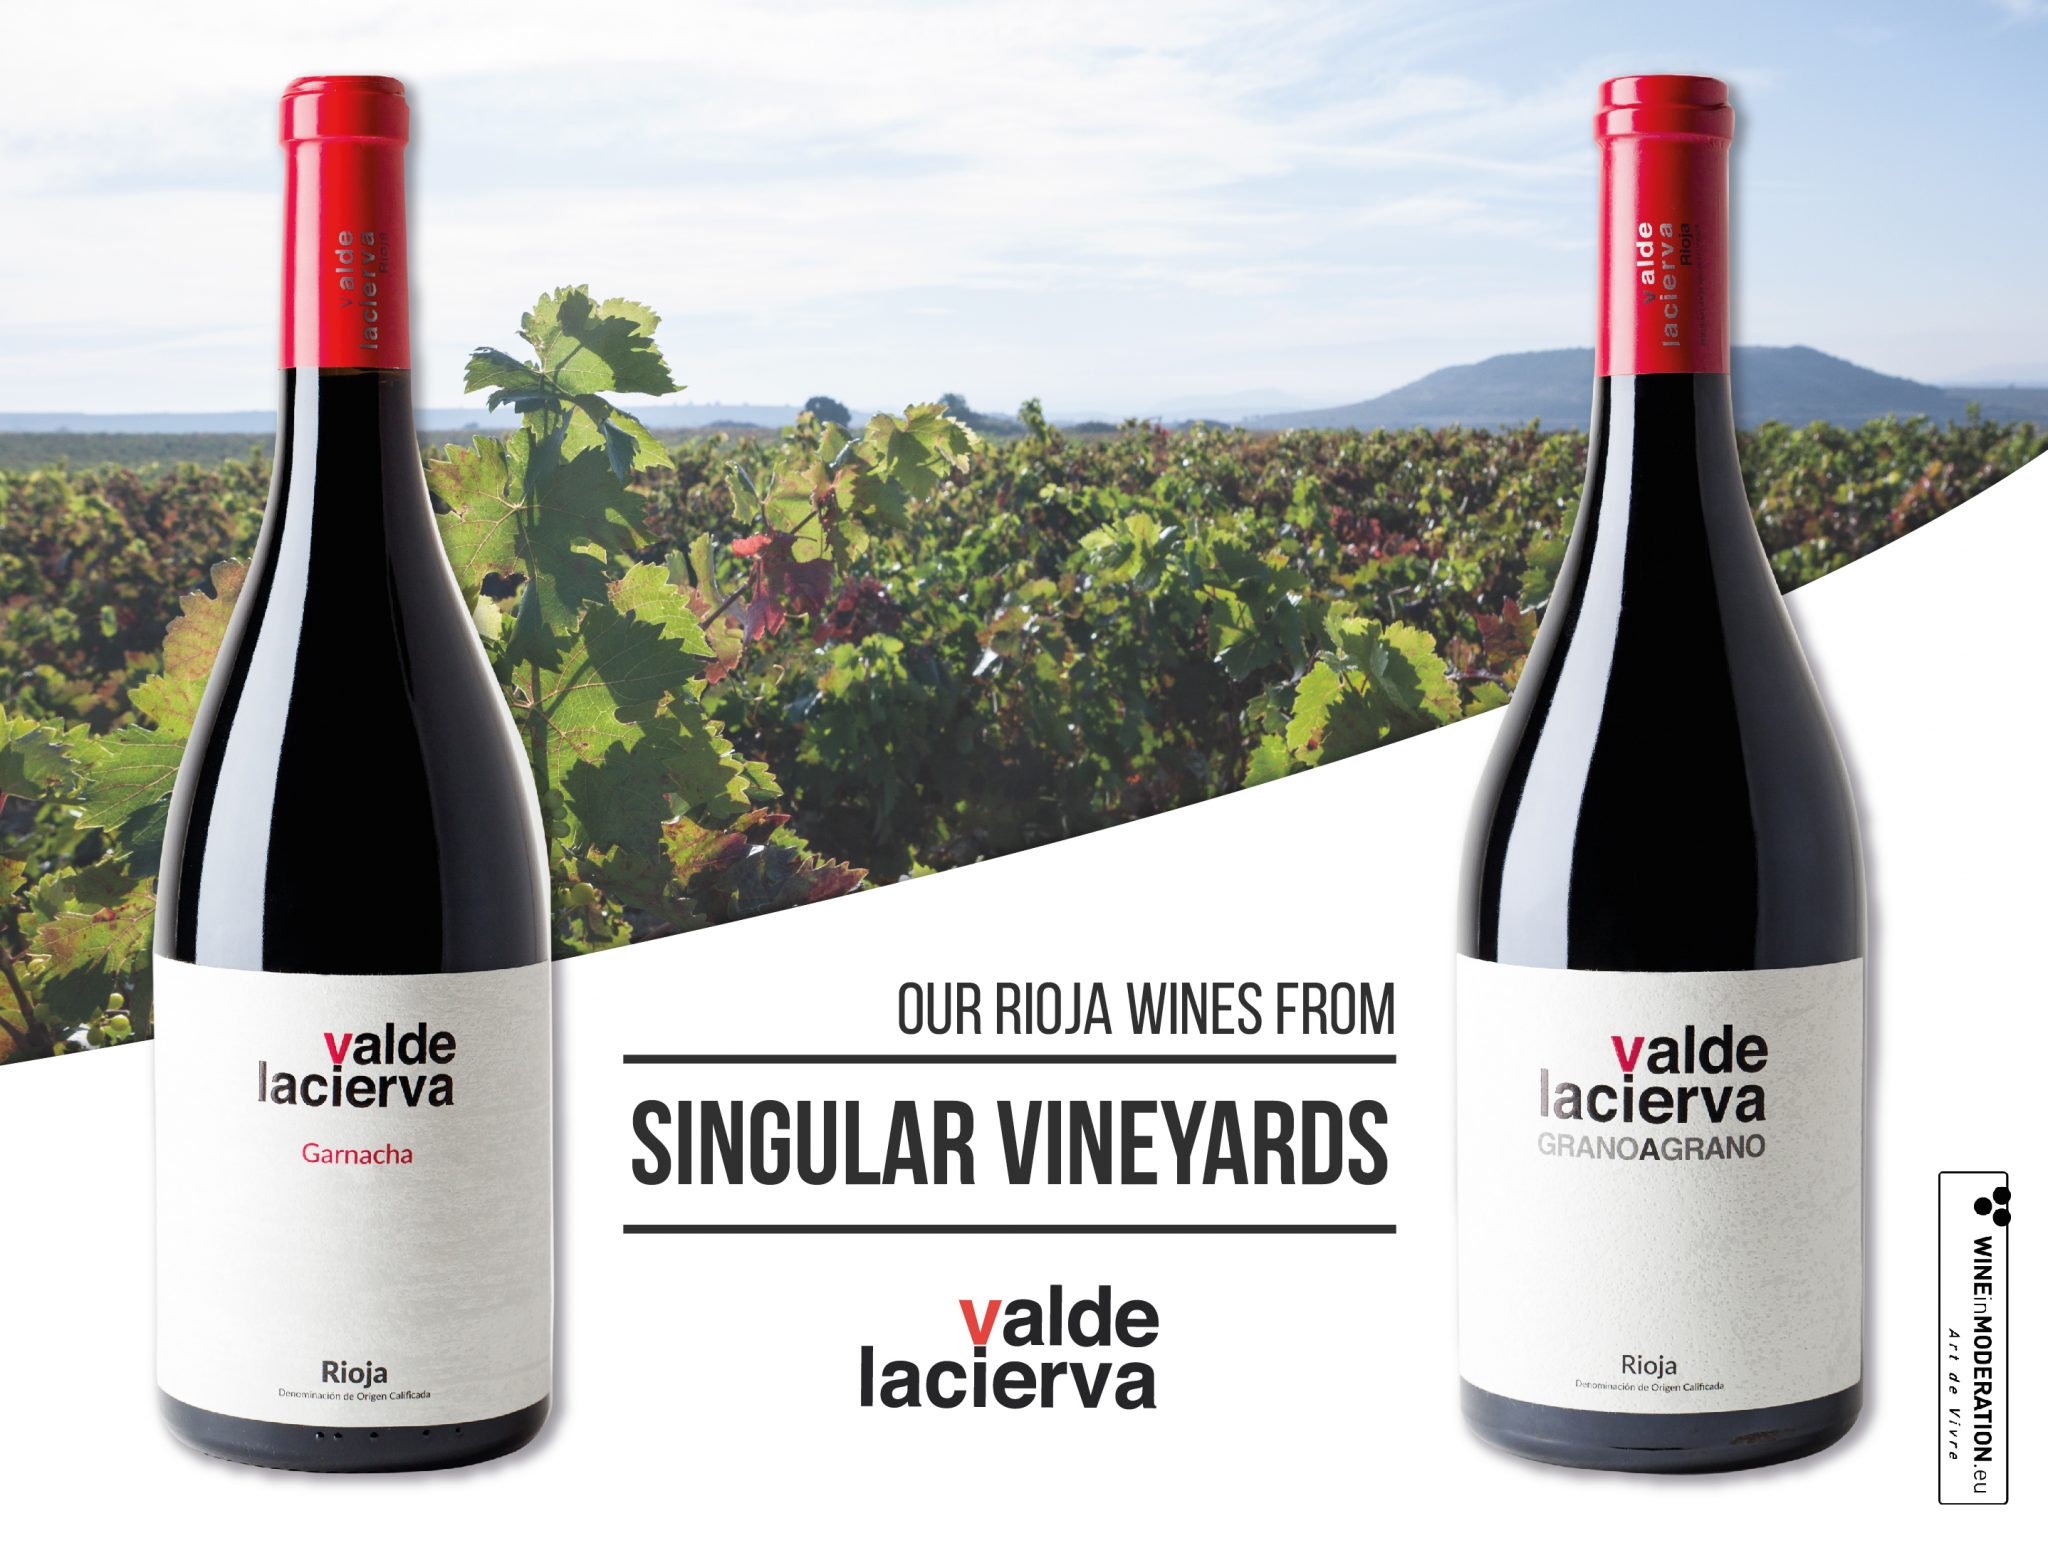 Valdelacierva-Grano-a-Grano-y-Garnacha-Viñedo-Singular-Rioja-vino